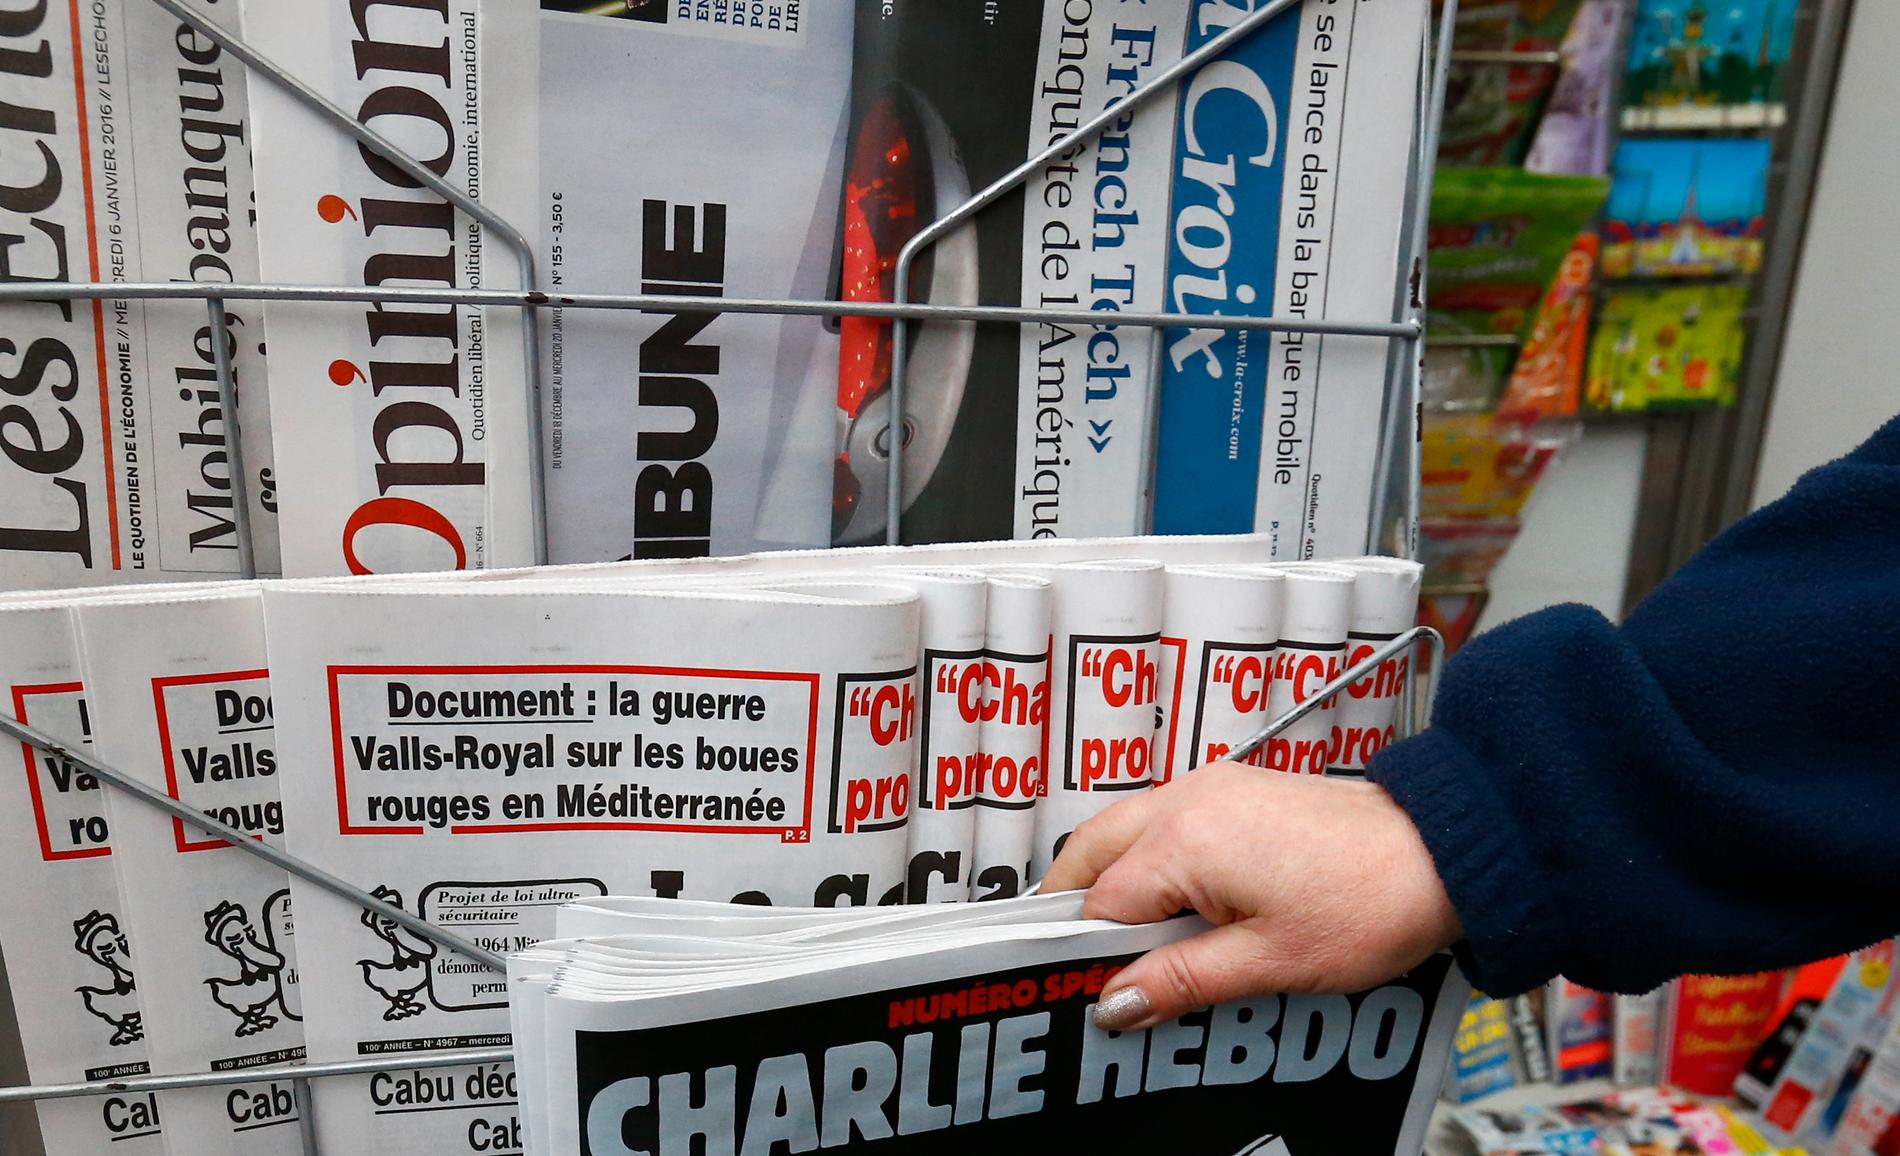 100 franska medieorganisationer har undertecknat ett upprop till stöd för yttrandefrihet efter att dödshot riktats mot anställda på satirtidningen Charlie Hebdo.